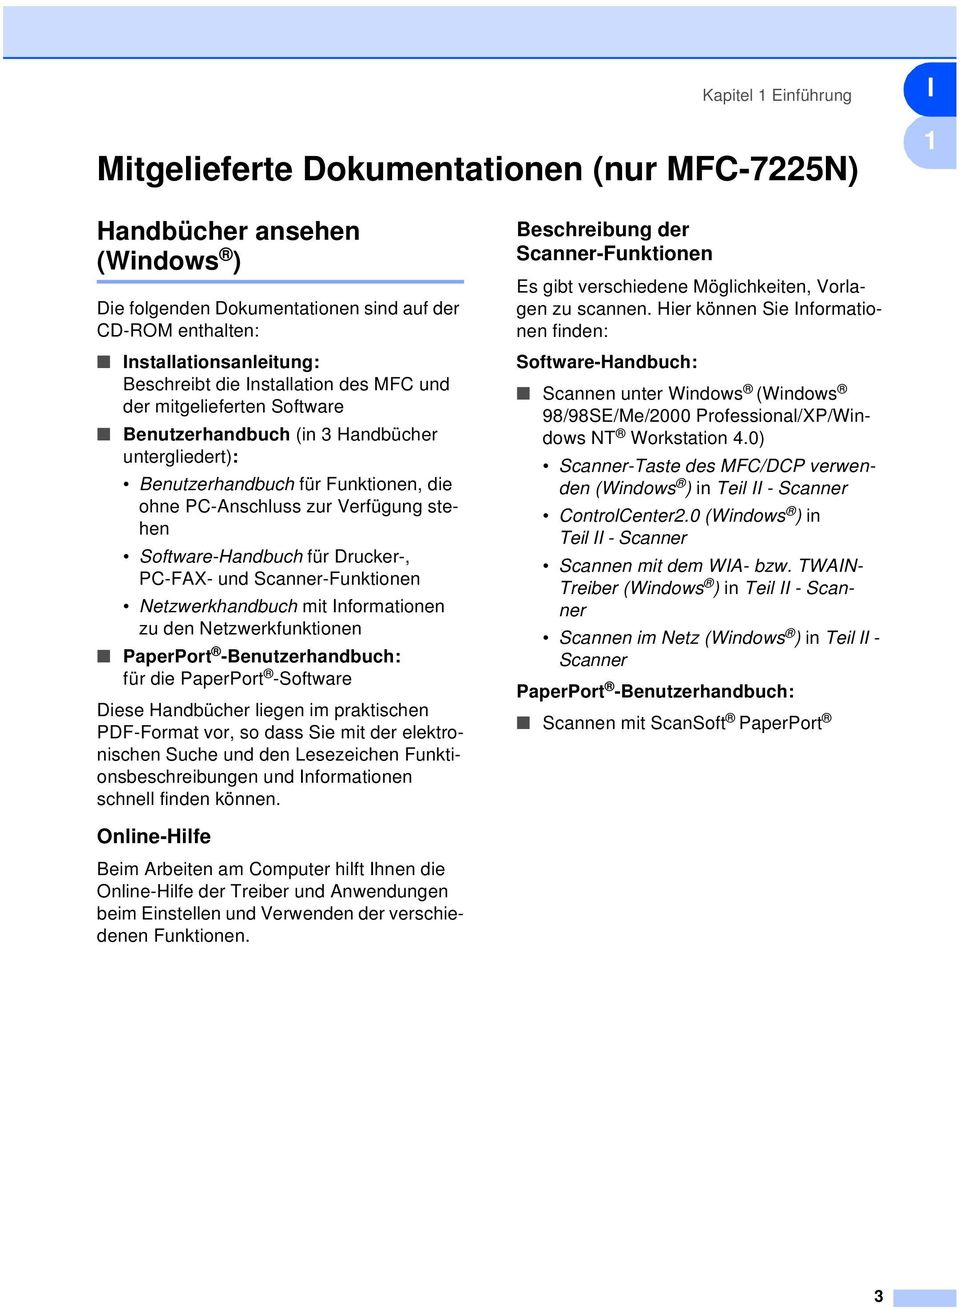 Software-Handbuch für Drucker-, PC-FAX- und Scanner-Funktionen Netzwerkhandbuch mit Informationen zu den Netzwerkfunktionen PaperPort -Benutzerhandbuch: für die PaperPort -Software Diese Handbücher